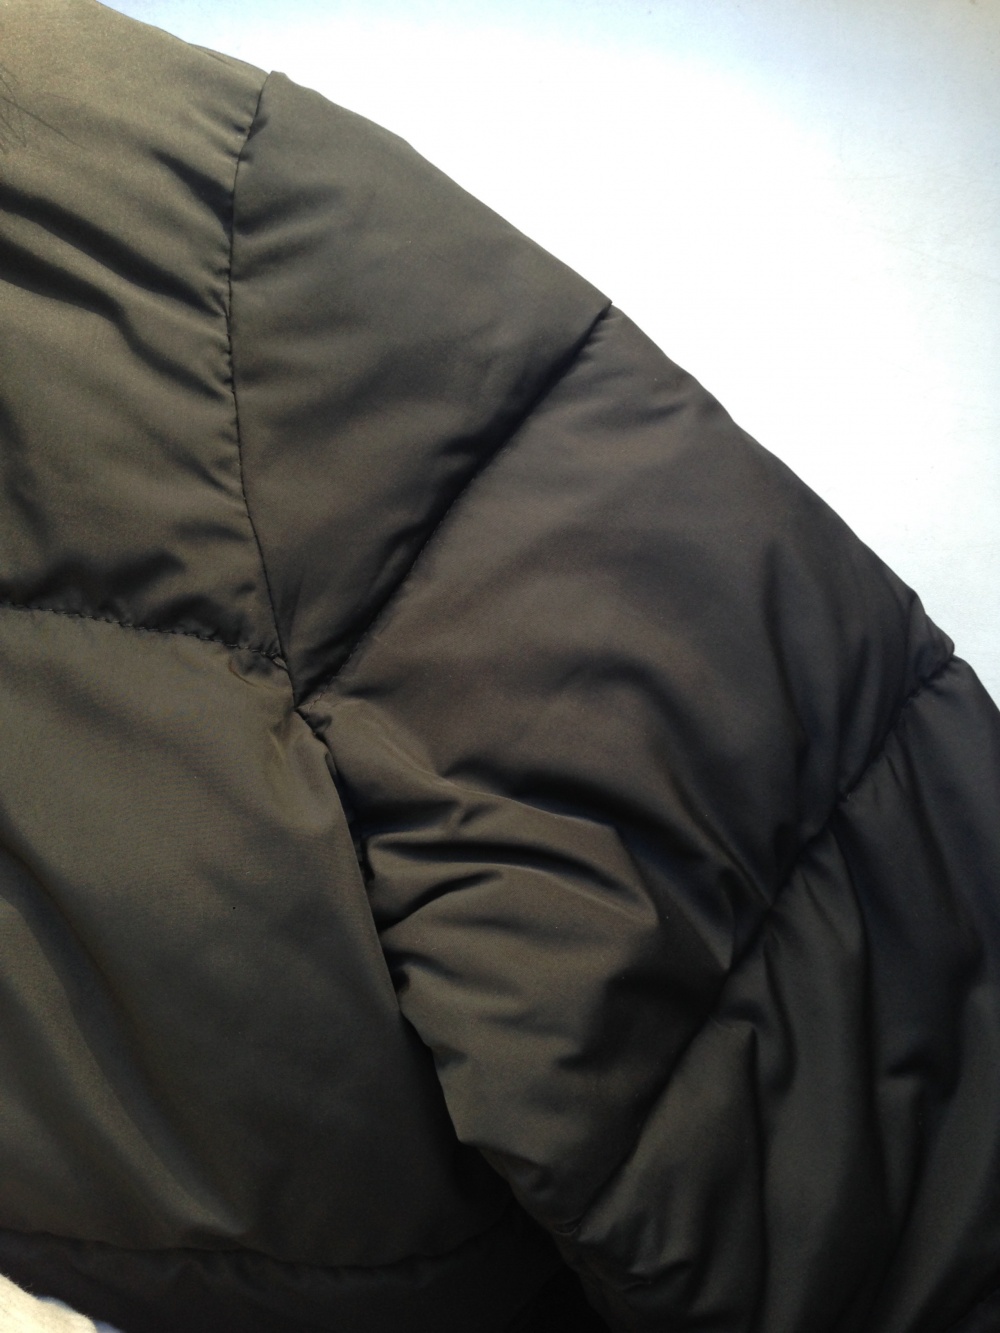 Утеплённая куртка " Jasqueline de Yong ", размер L